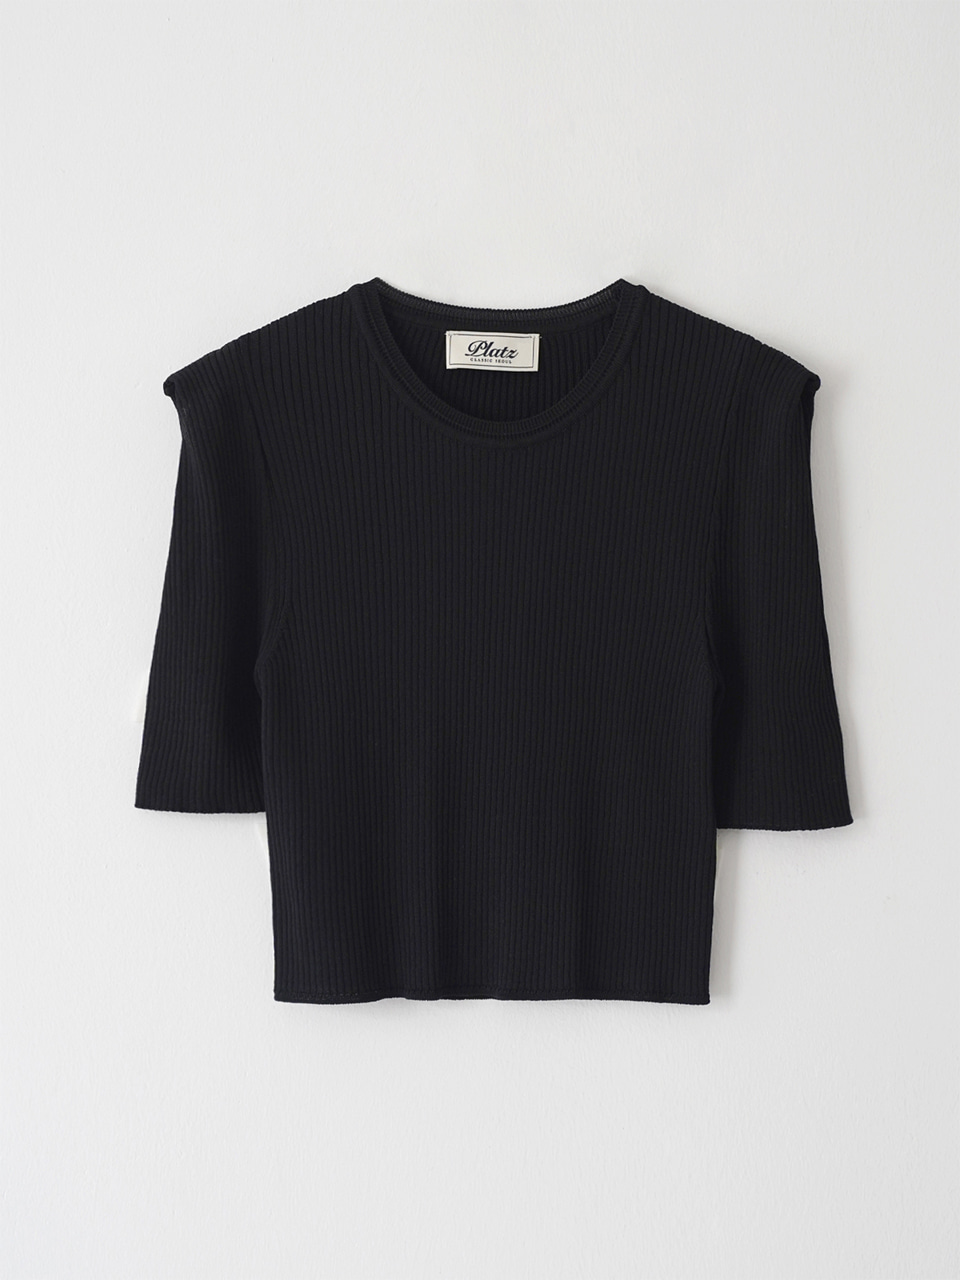 Square Shoulder Crop knit (Black)